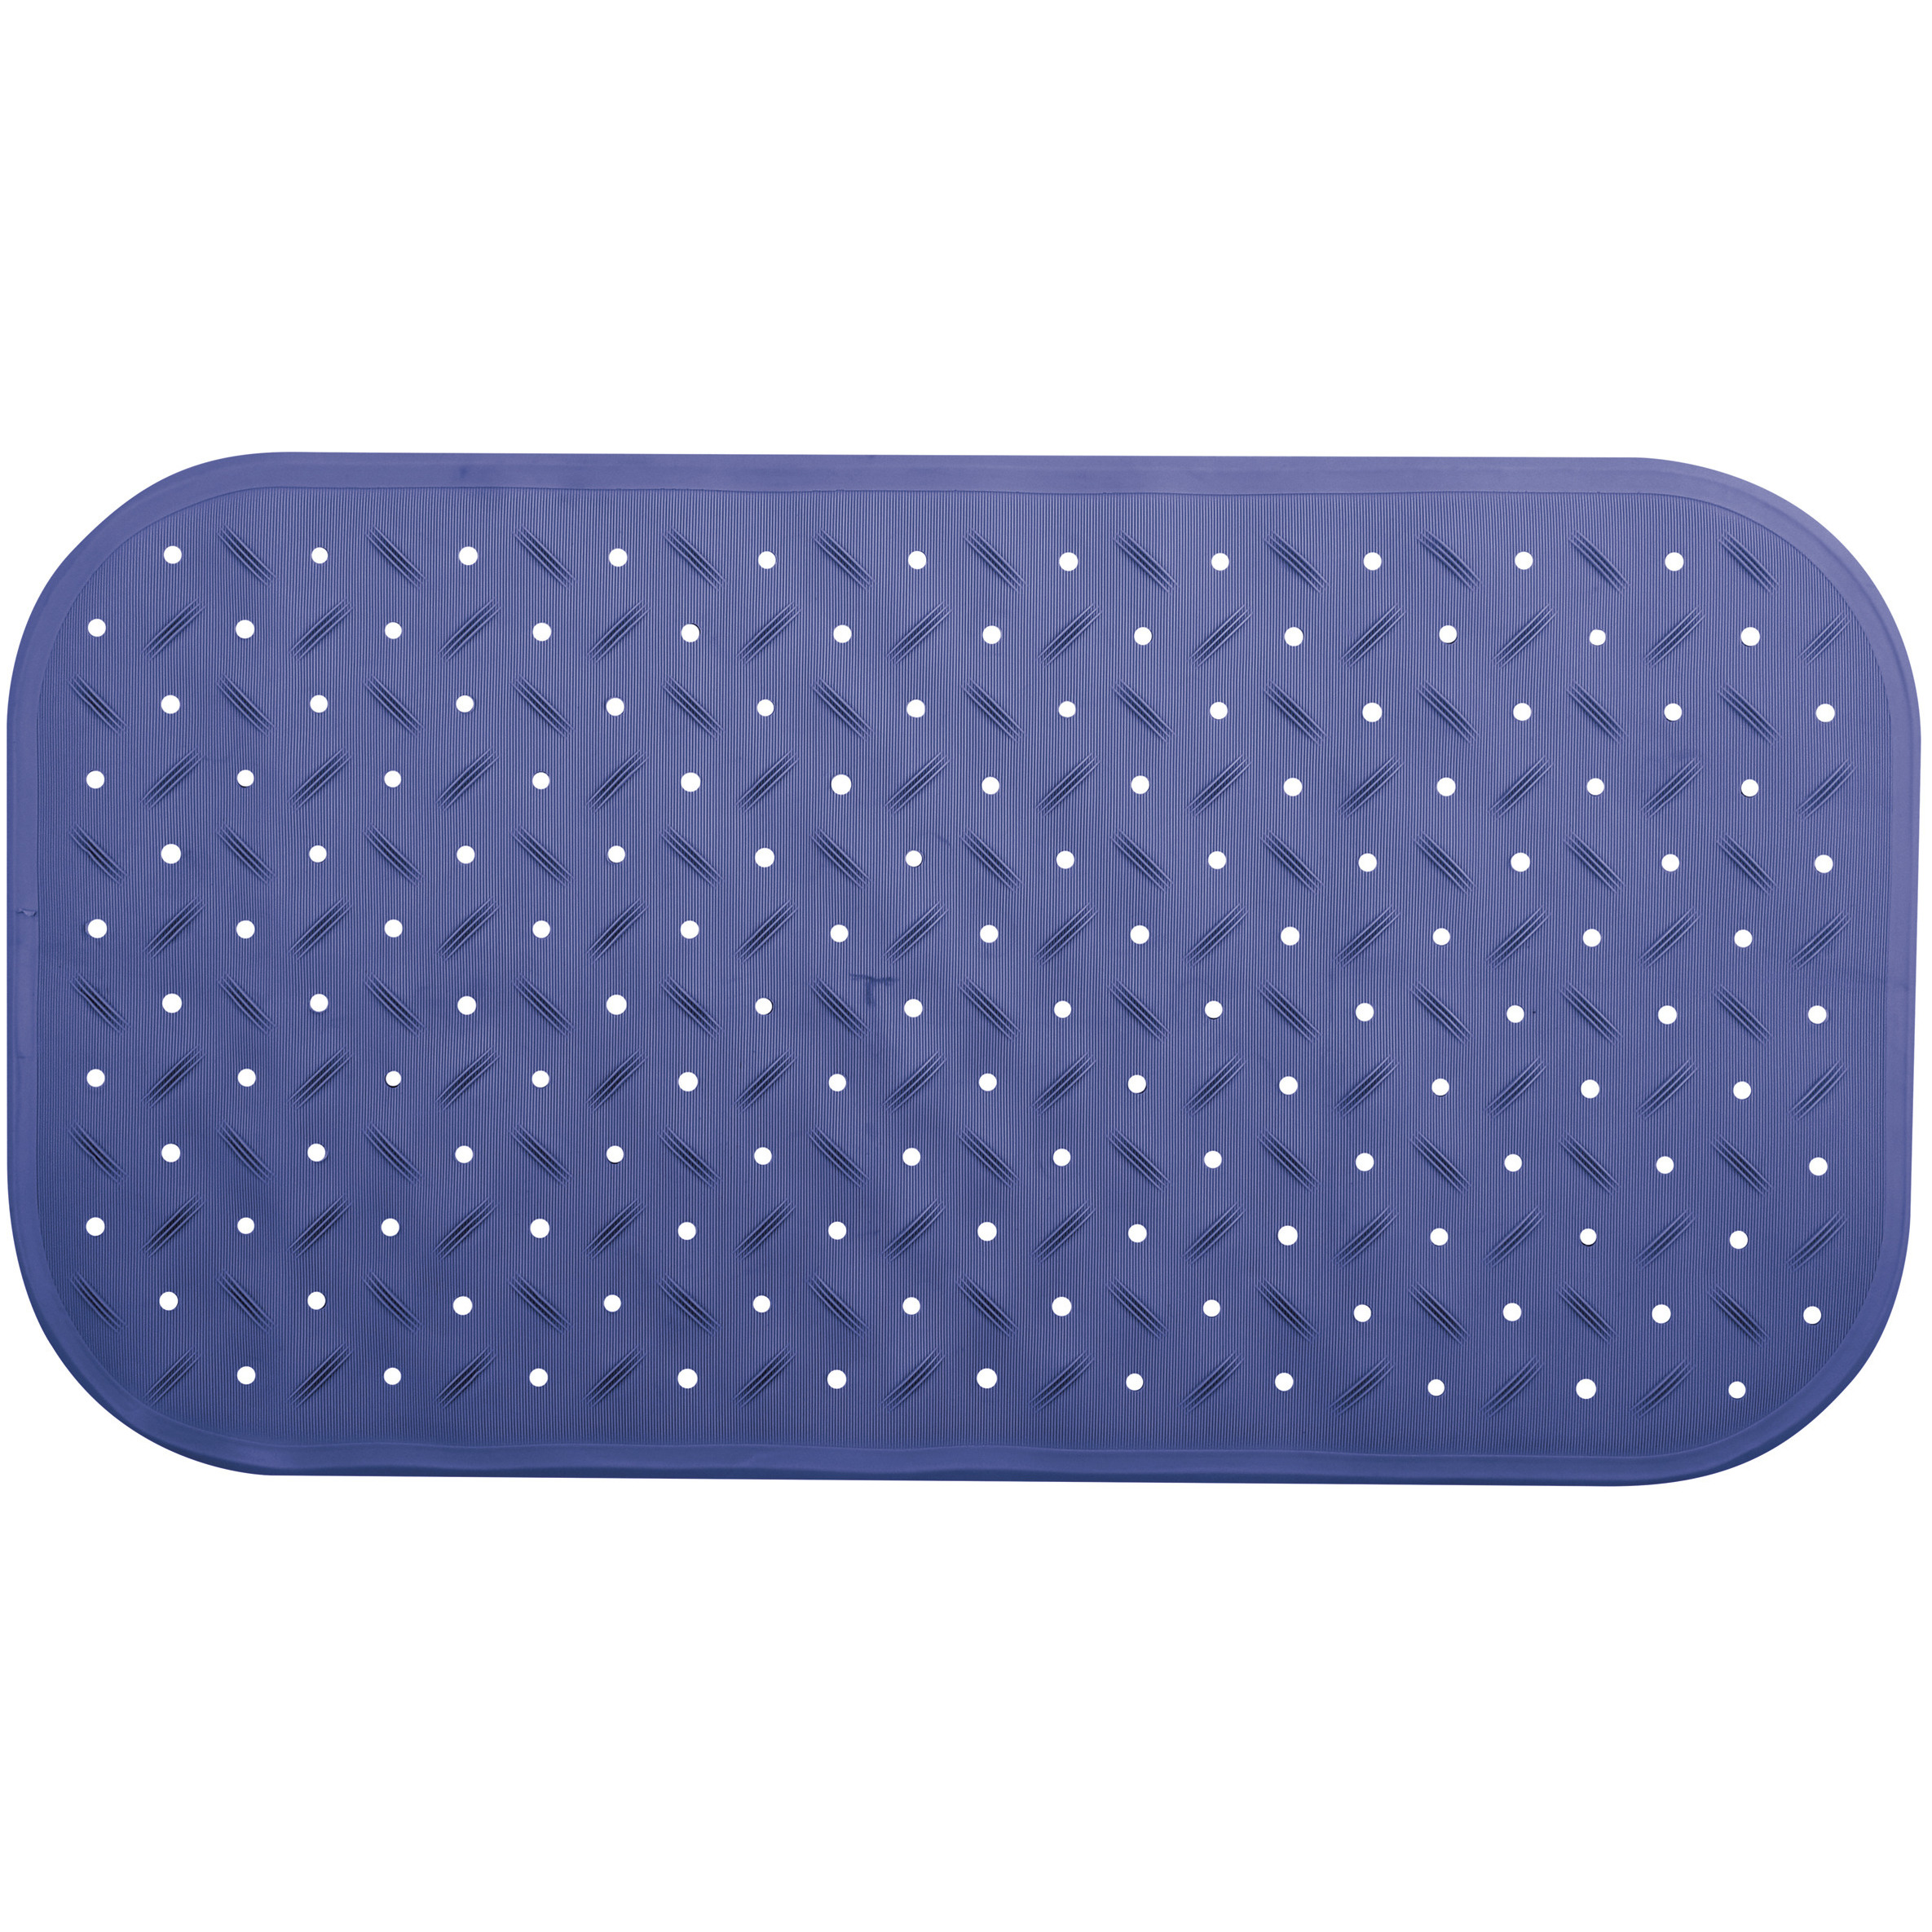 Douche-bad anti-slip mat badkamer rubber blauw 36 x 76 cm rechthoek